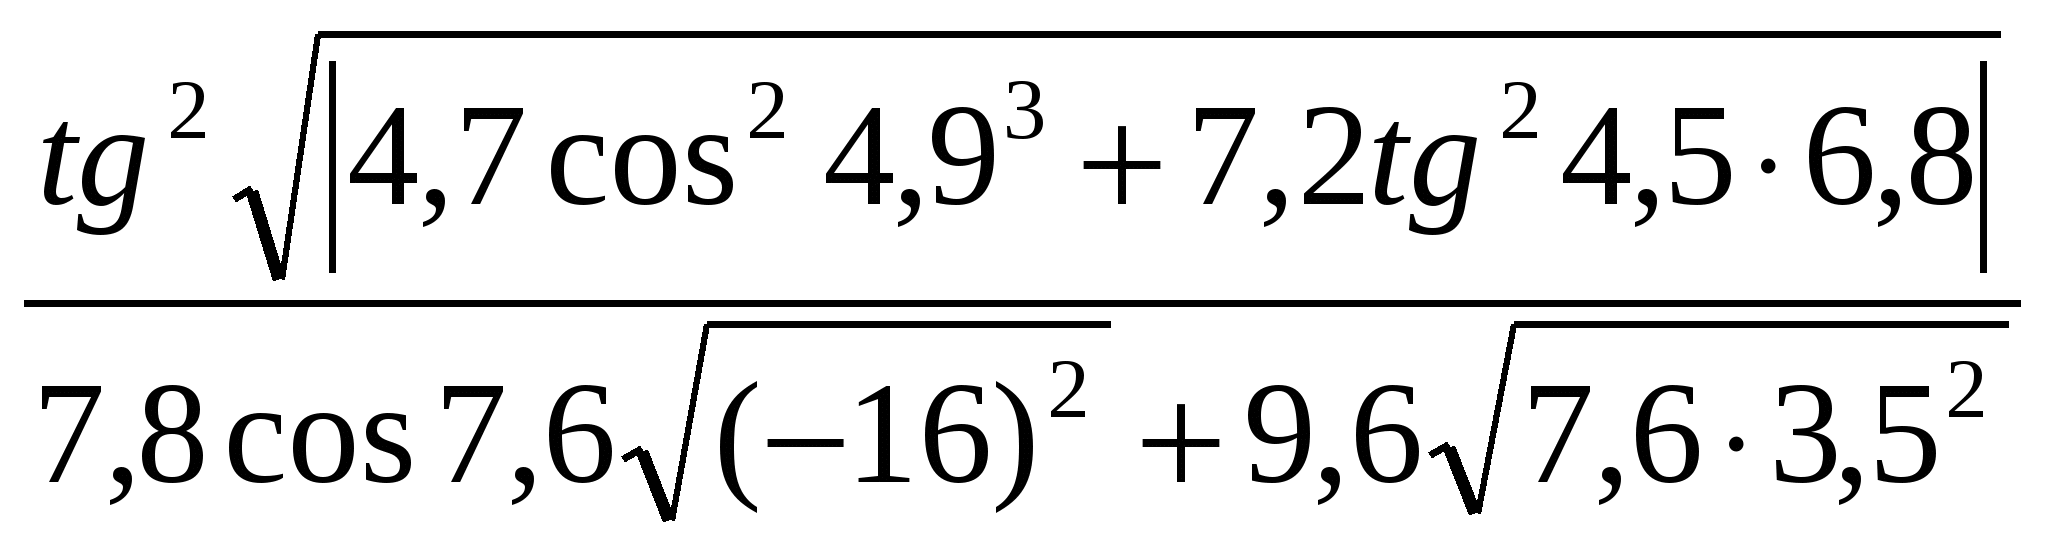 Урок по математике Правила записи арифметических выражений в алгоритмическом языком